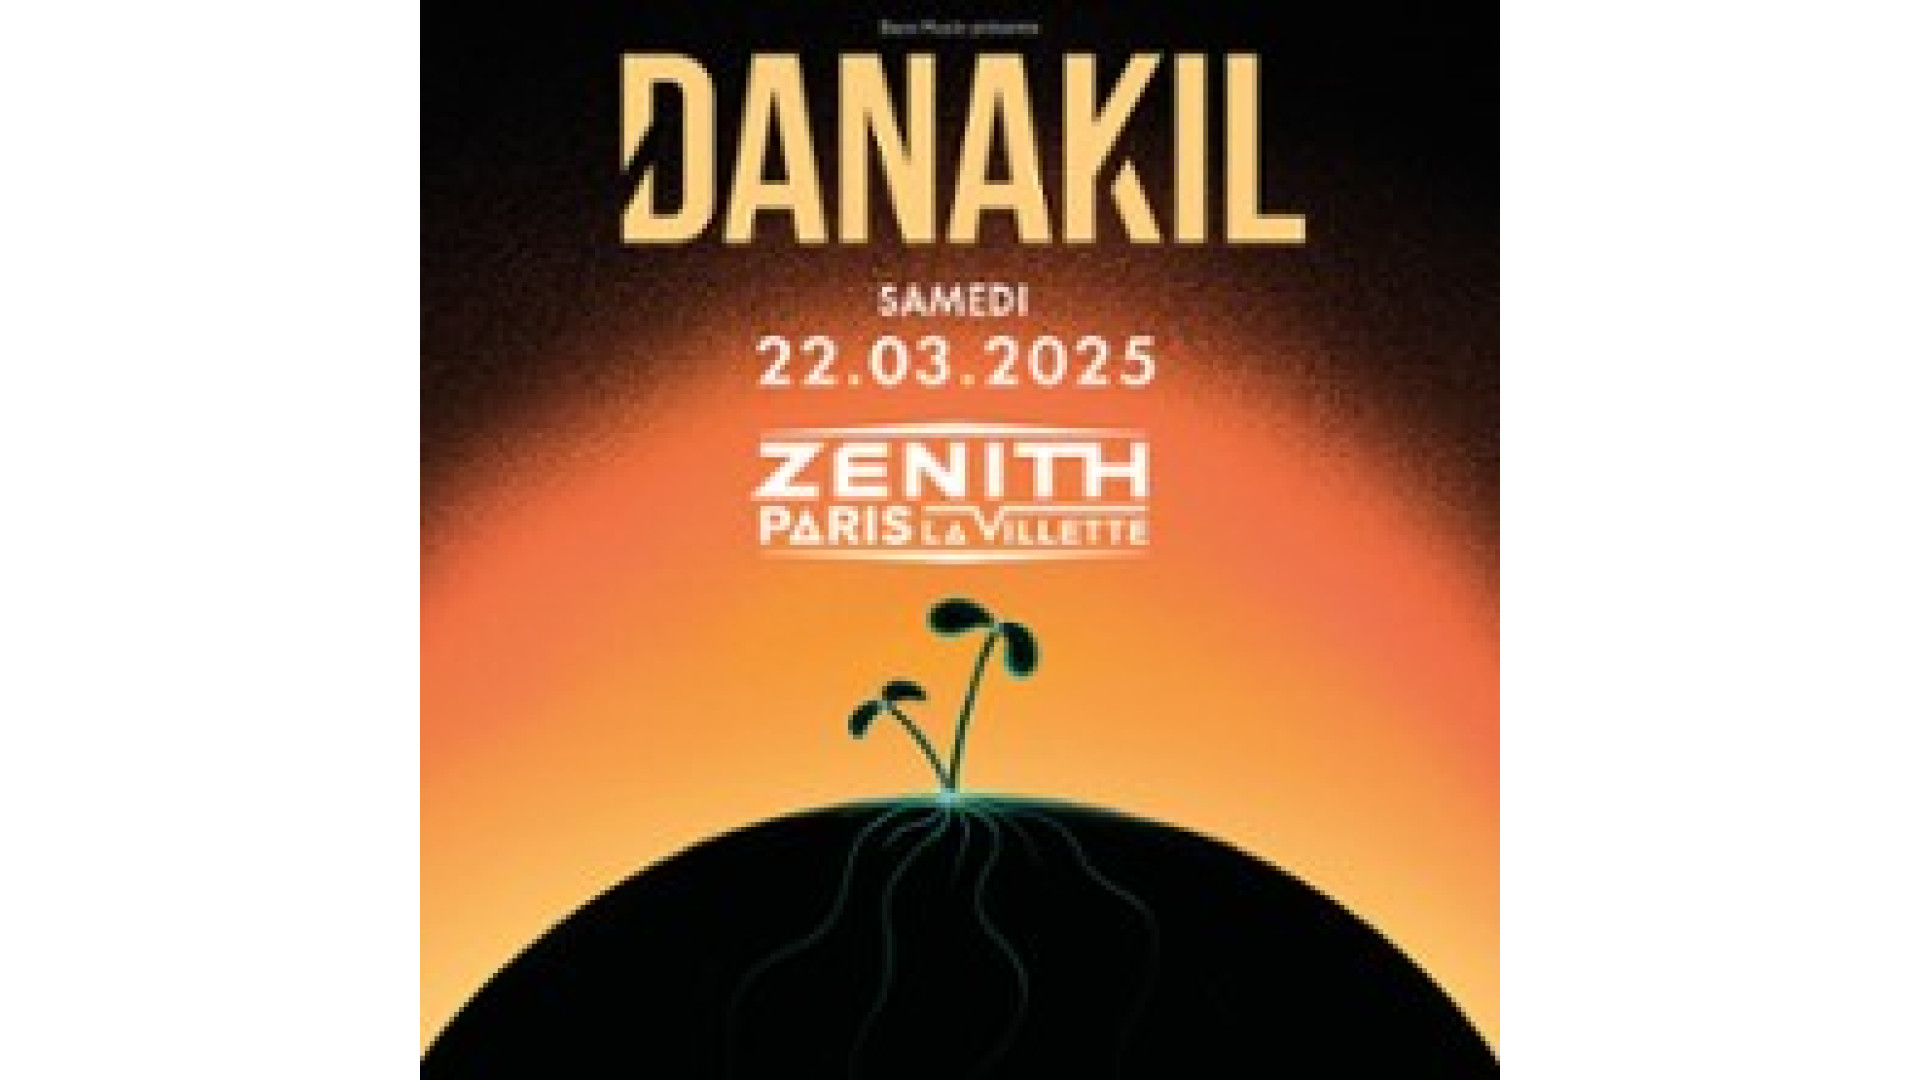 Concert Danakil à Paris